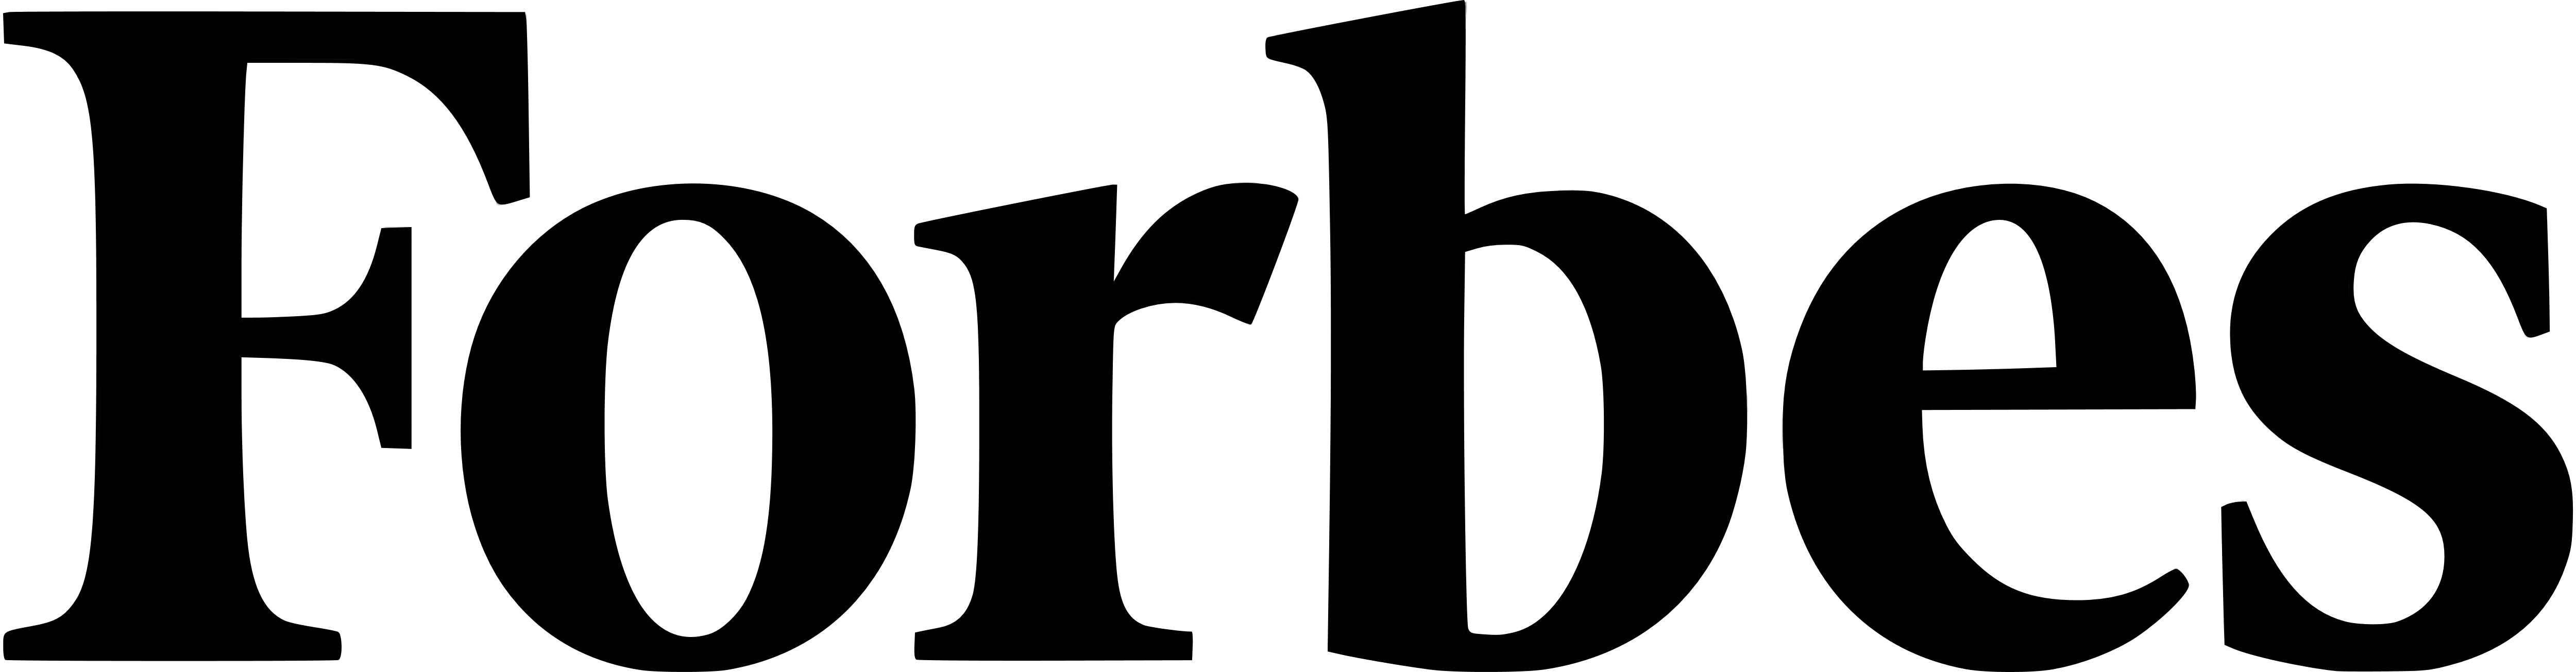 Forbes Logo in Black